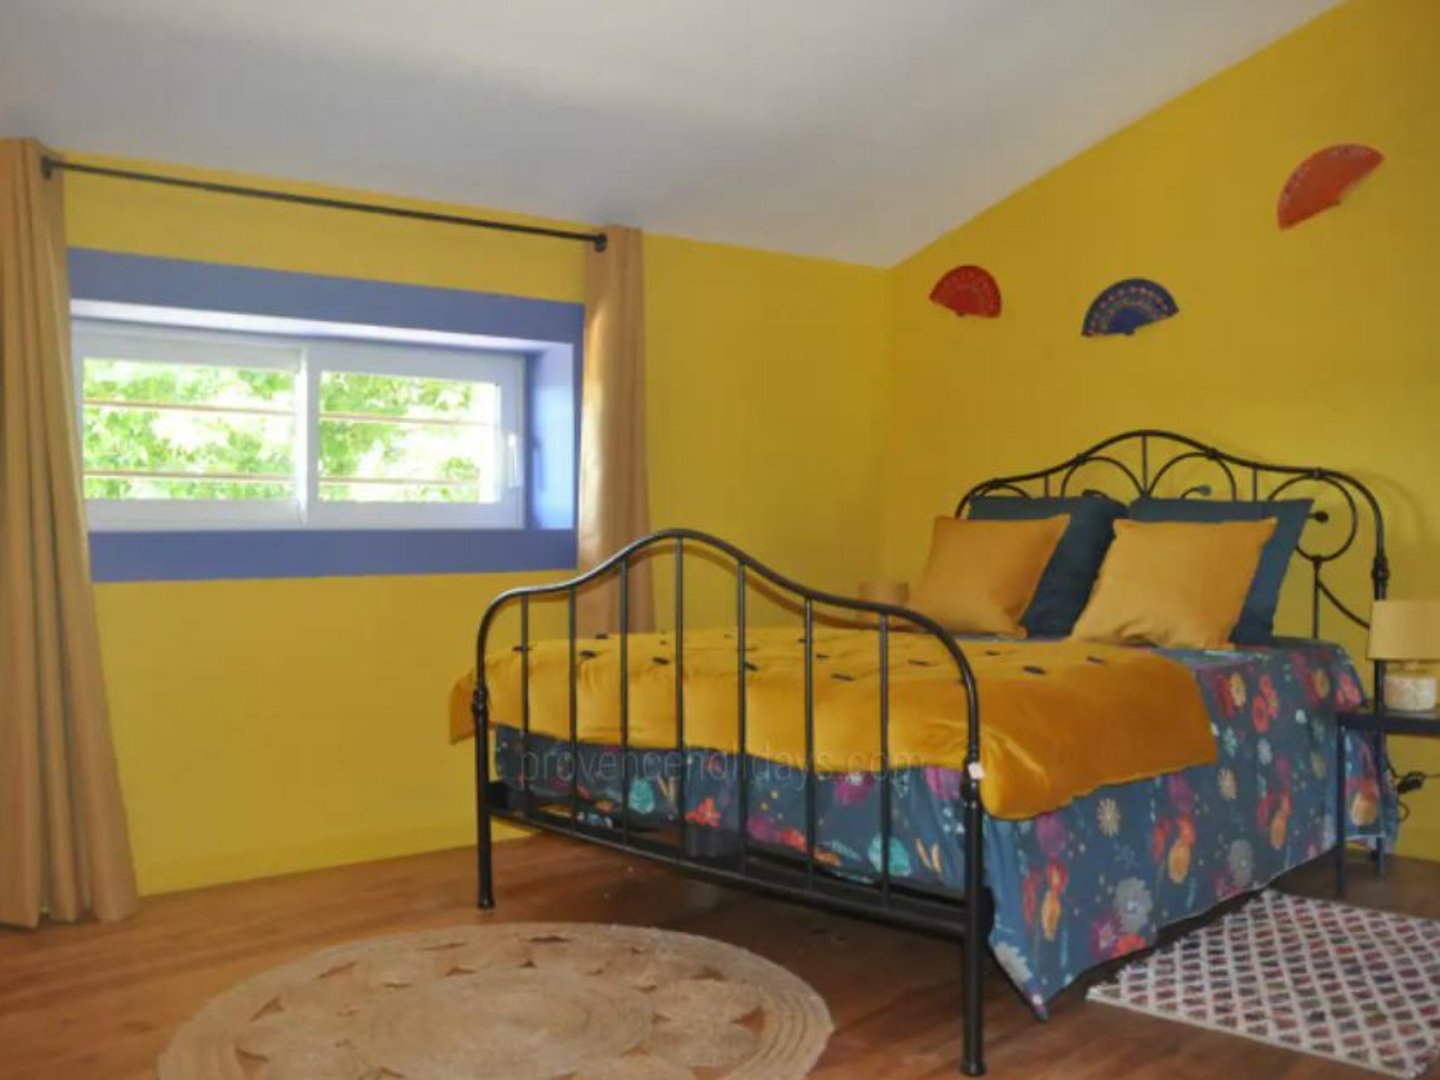 24 - La Manade: Villa: Bedroom